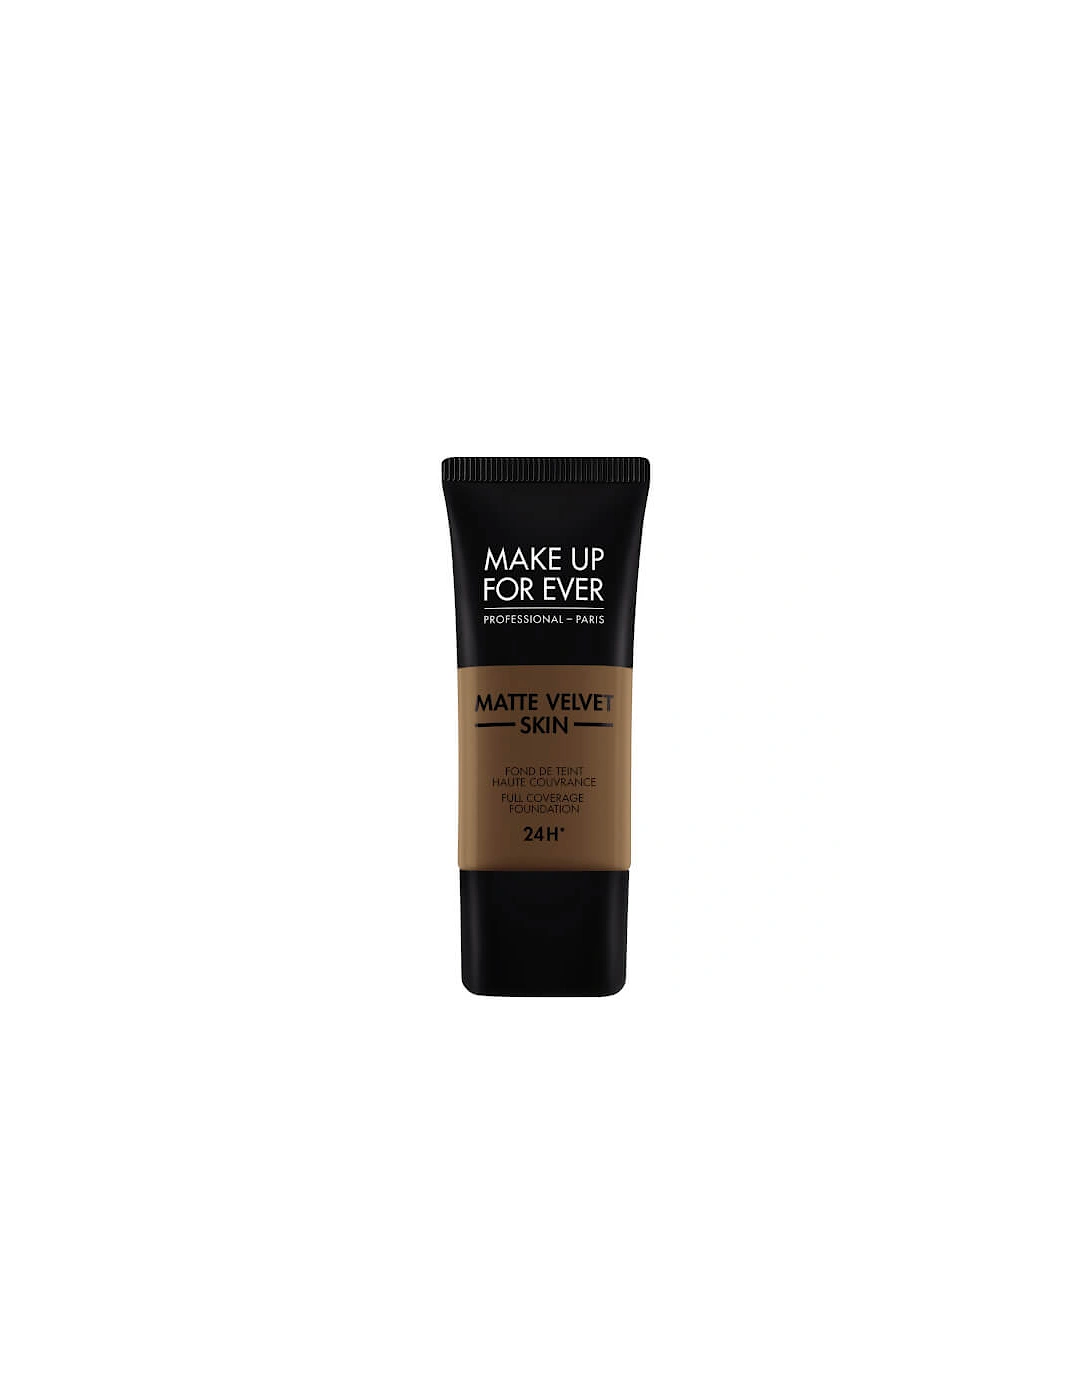 Matte Velvet Skin Foundation - 540 Dark brown, 2 of 1